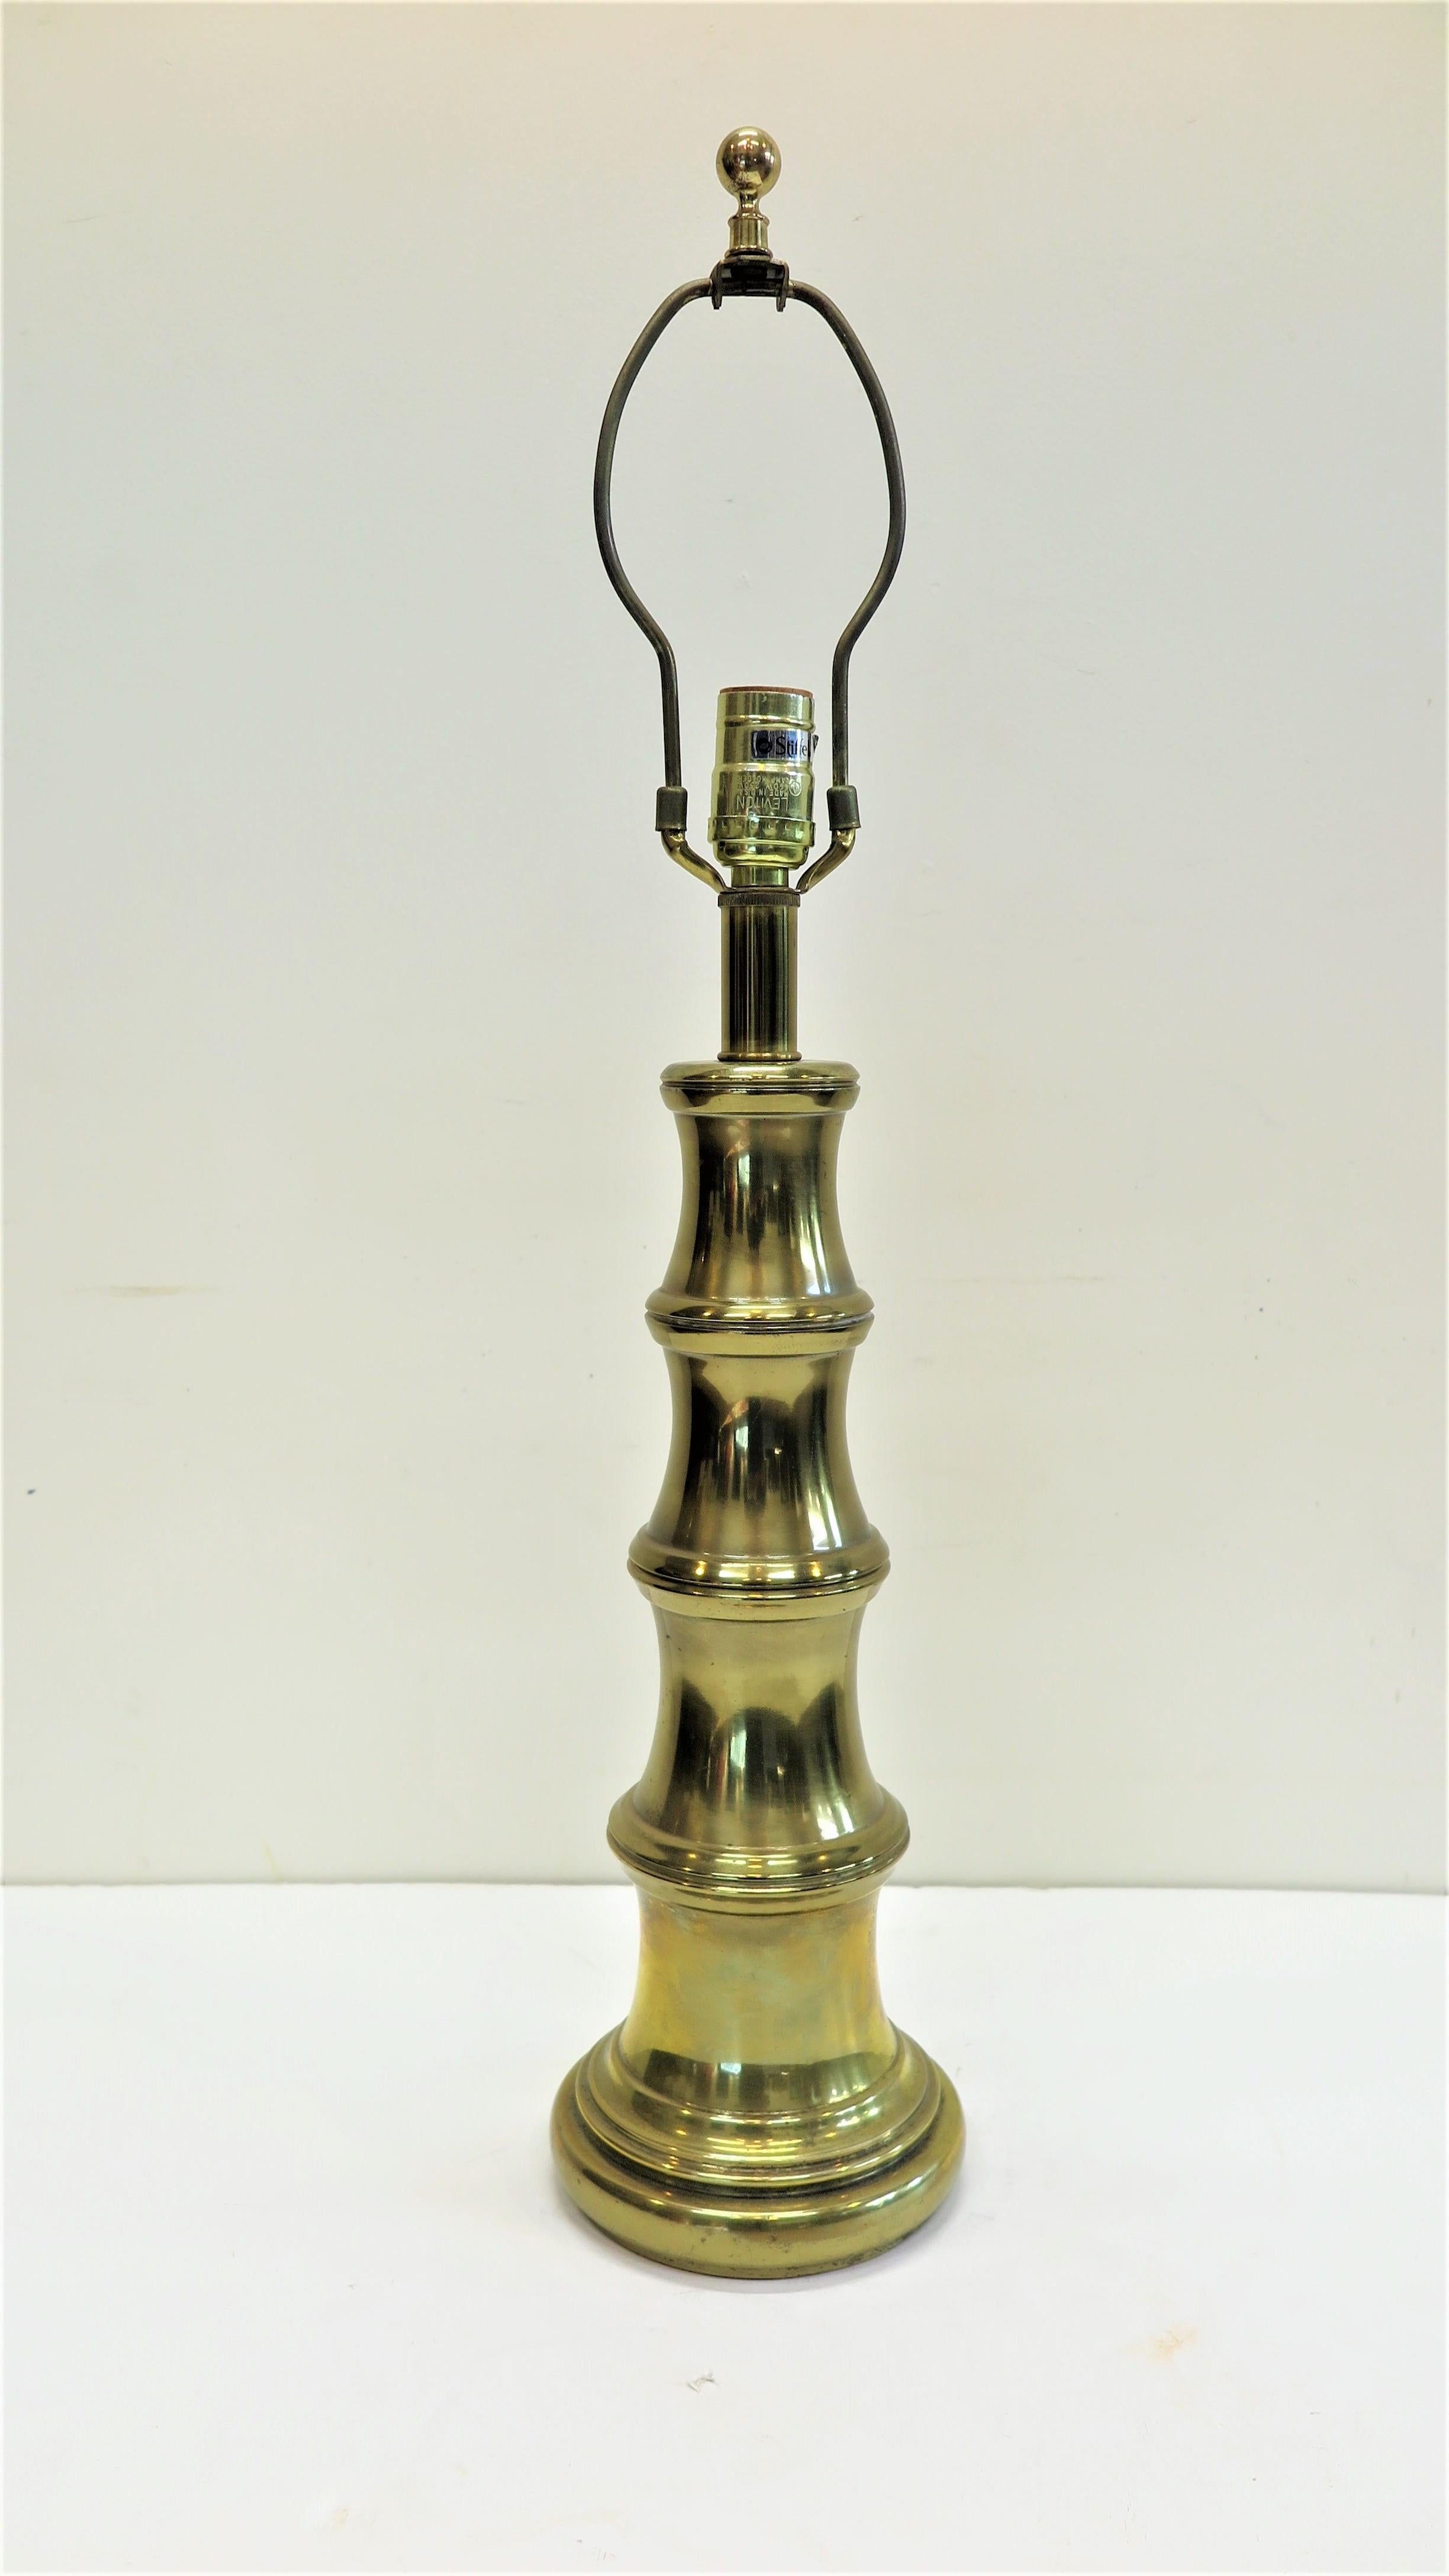 Lampe de table Stiffel en laiton, style bambou. Lampe de table Stiffel en laiton dont la forme simule le bambou. Très bon état. Avoir un interrupteur à trois voies. Lampe de table en laiton massif de qualité, de style américain 1950-60. 
L'image de